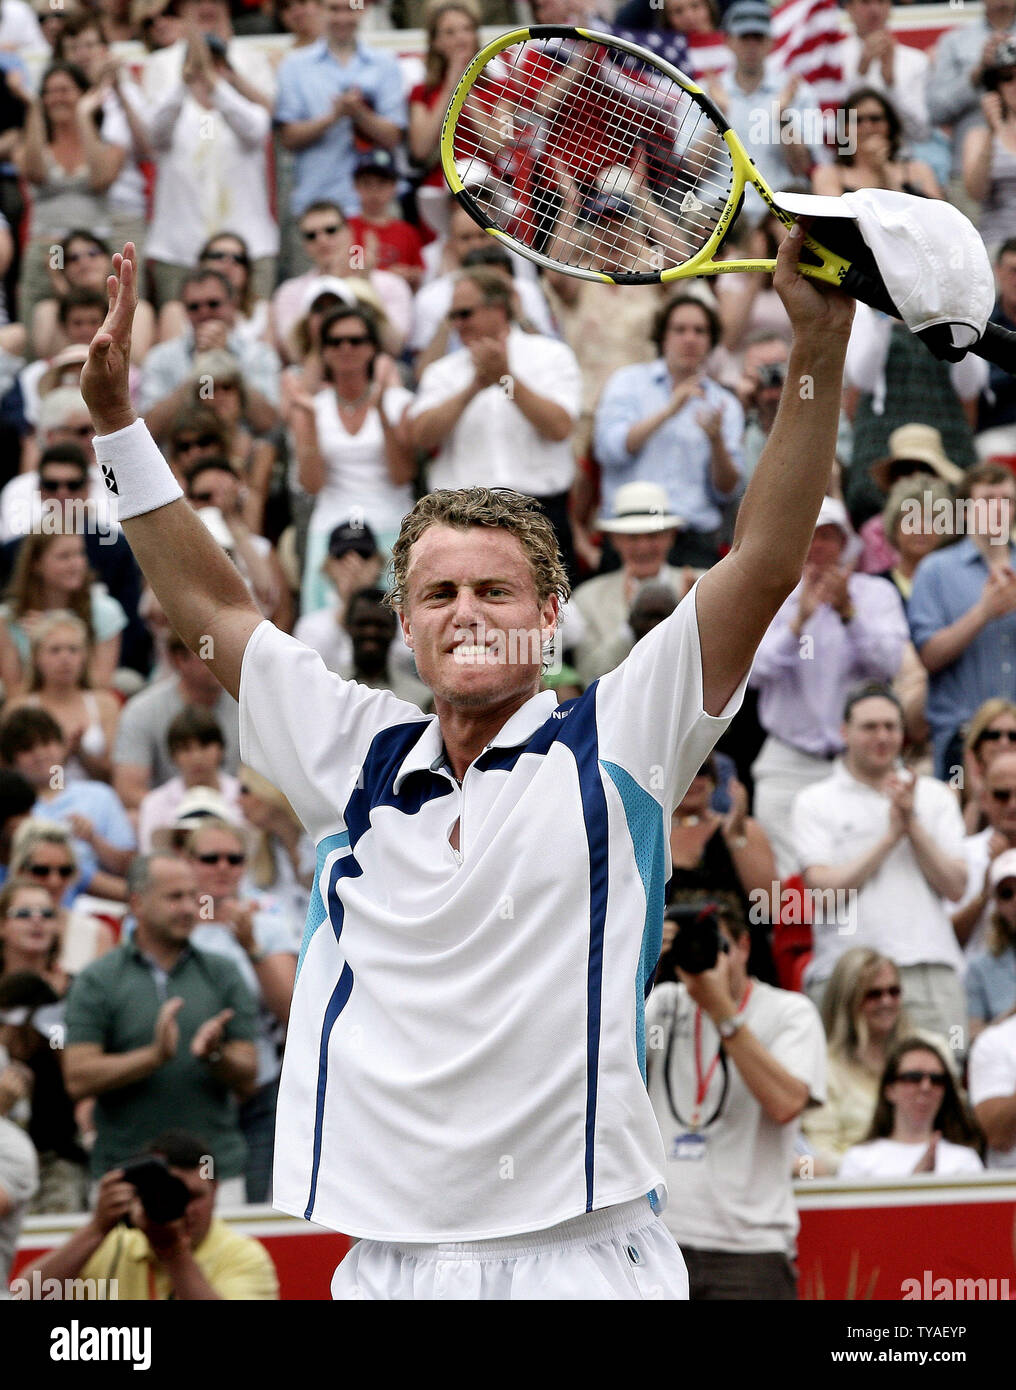 Australier Lleyton Hewitt feiert seinen Sieg über den Amerikaner James Blake im Finale der 2006 Stella Artois Tennis Turnier in London am Sonntag, den 18. Juni 2006. Hewitt das Spiel 6-4 6-4 gewonnen. (UPI Foto/Hugo Philpott) Stockfoto